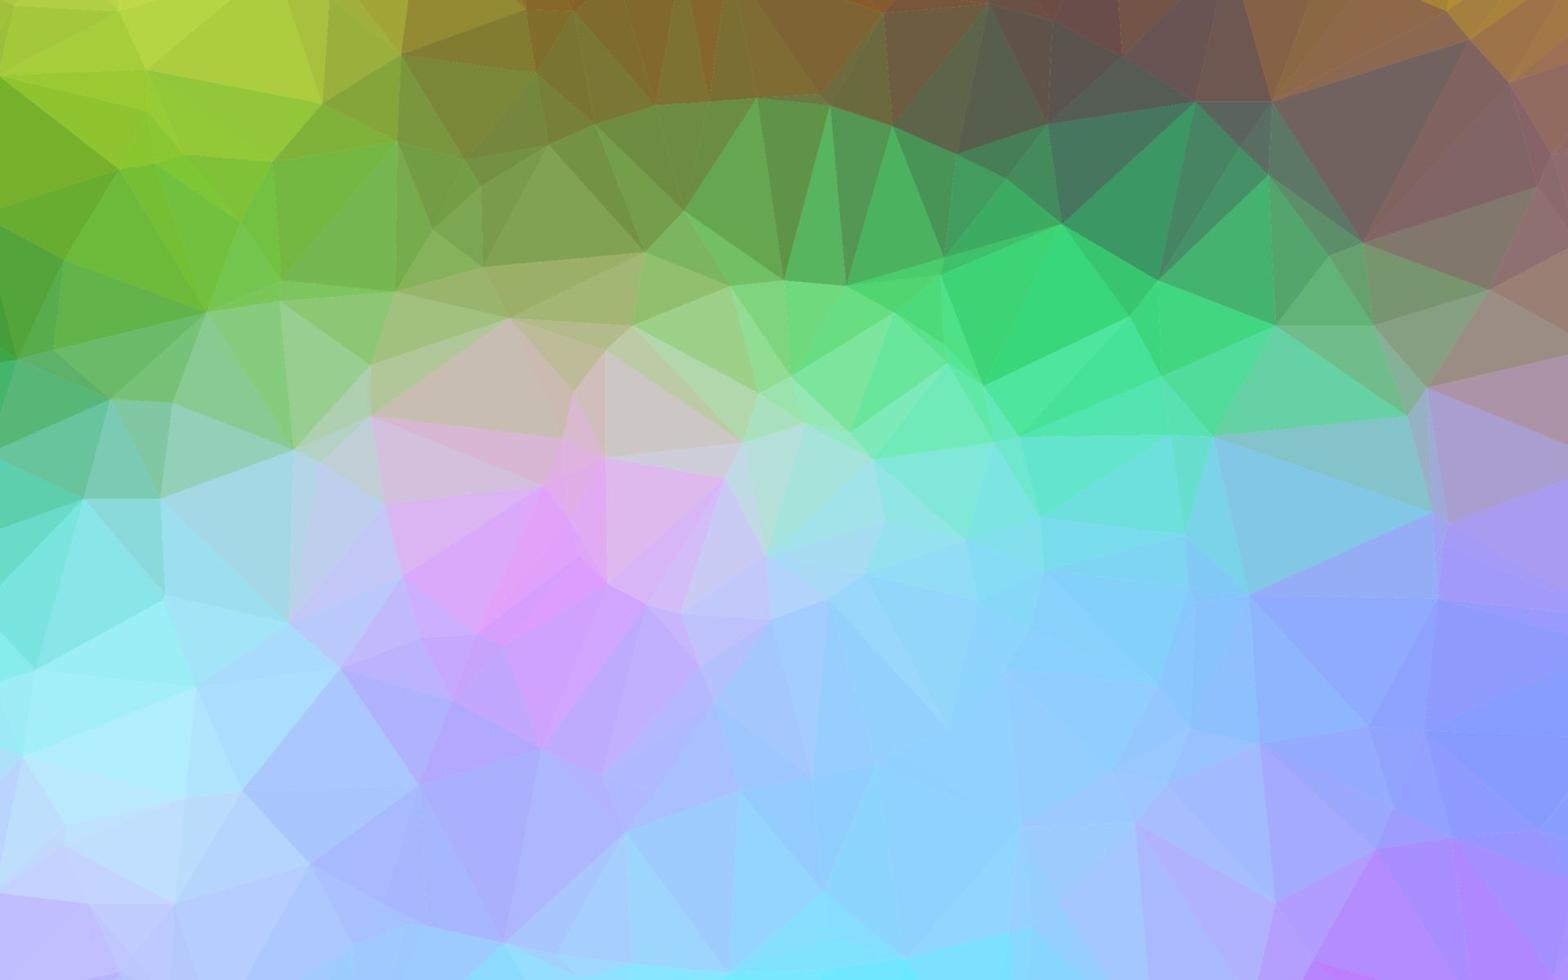 luz multicolor, arco iris vector abstracto textura poligonal.